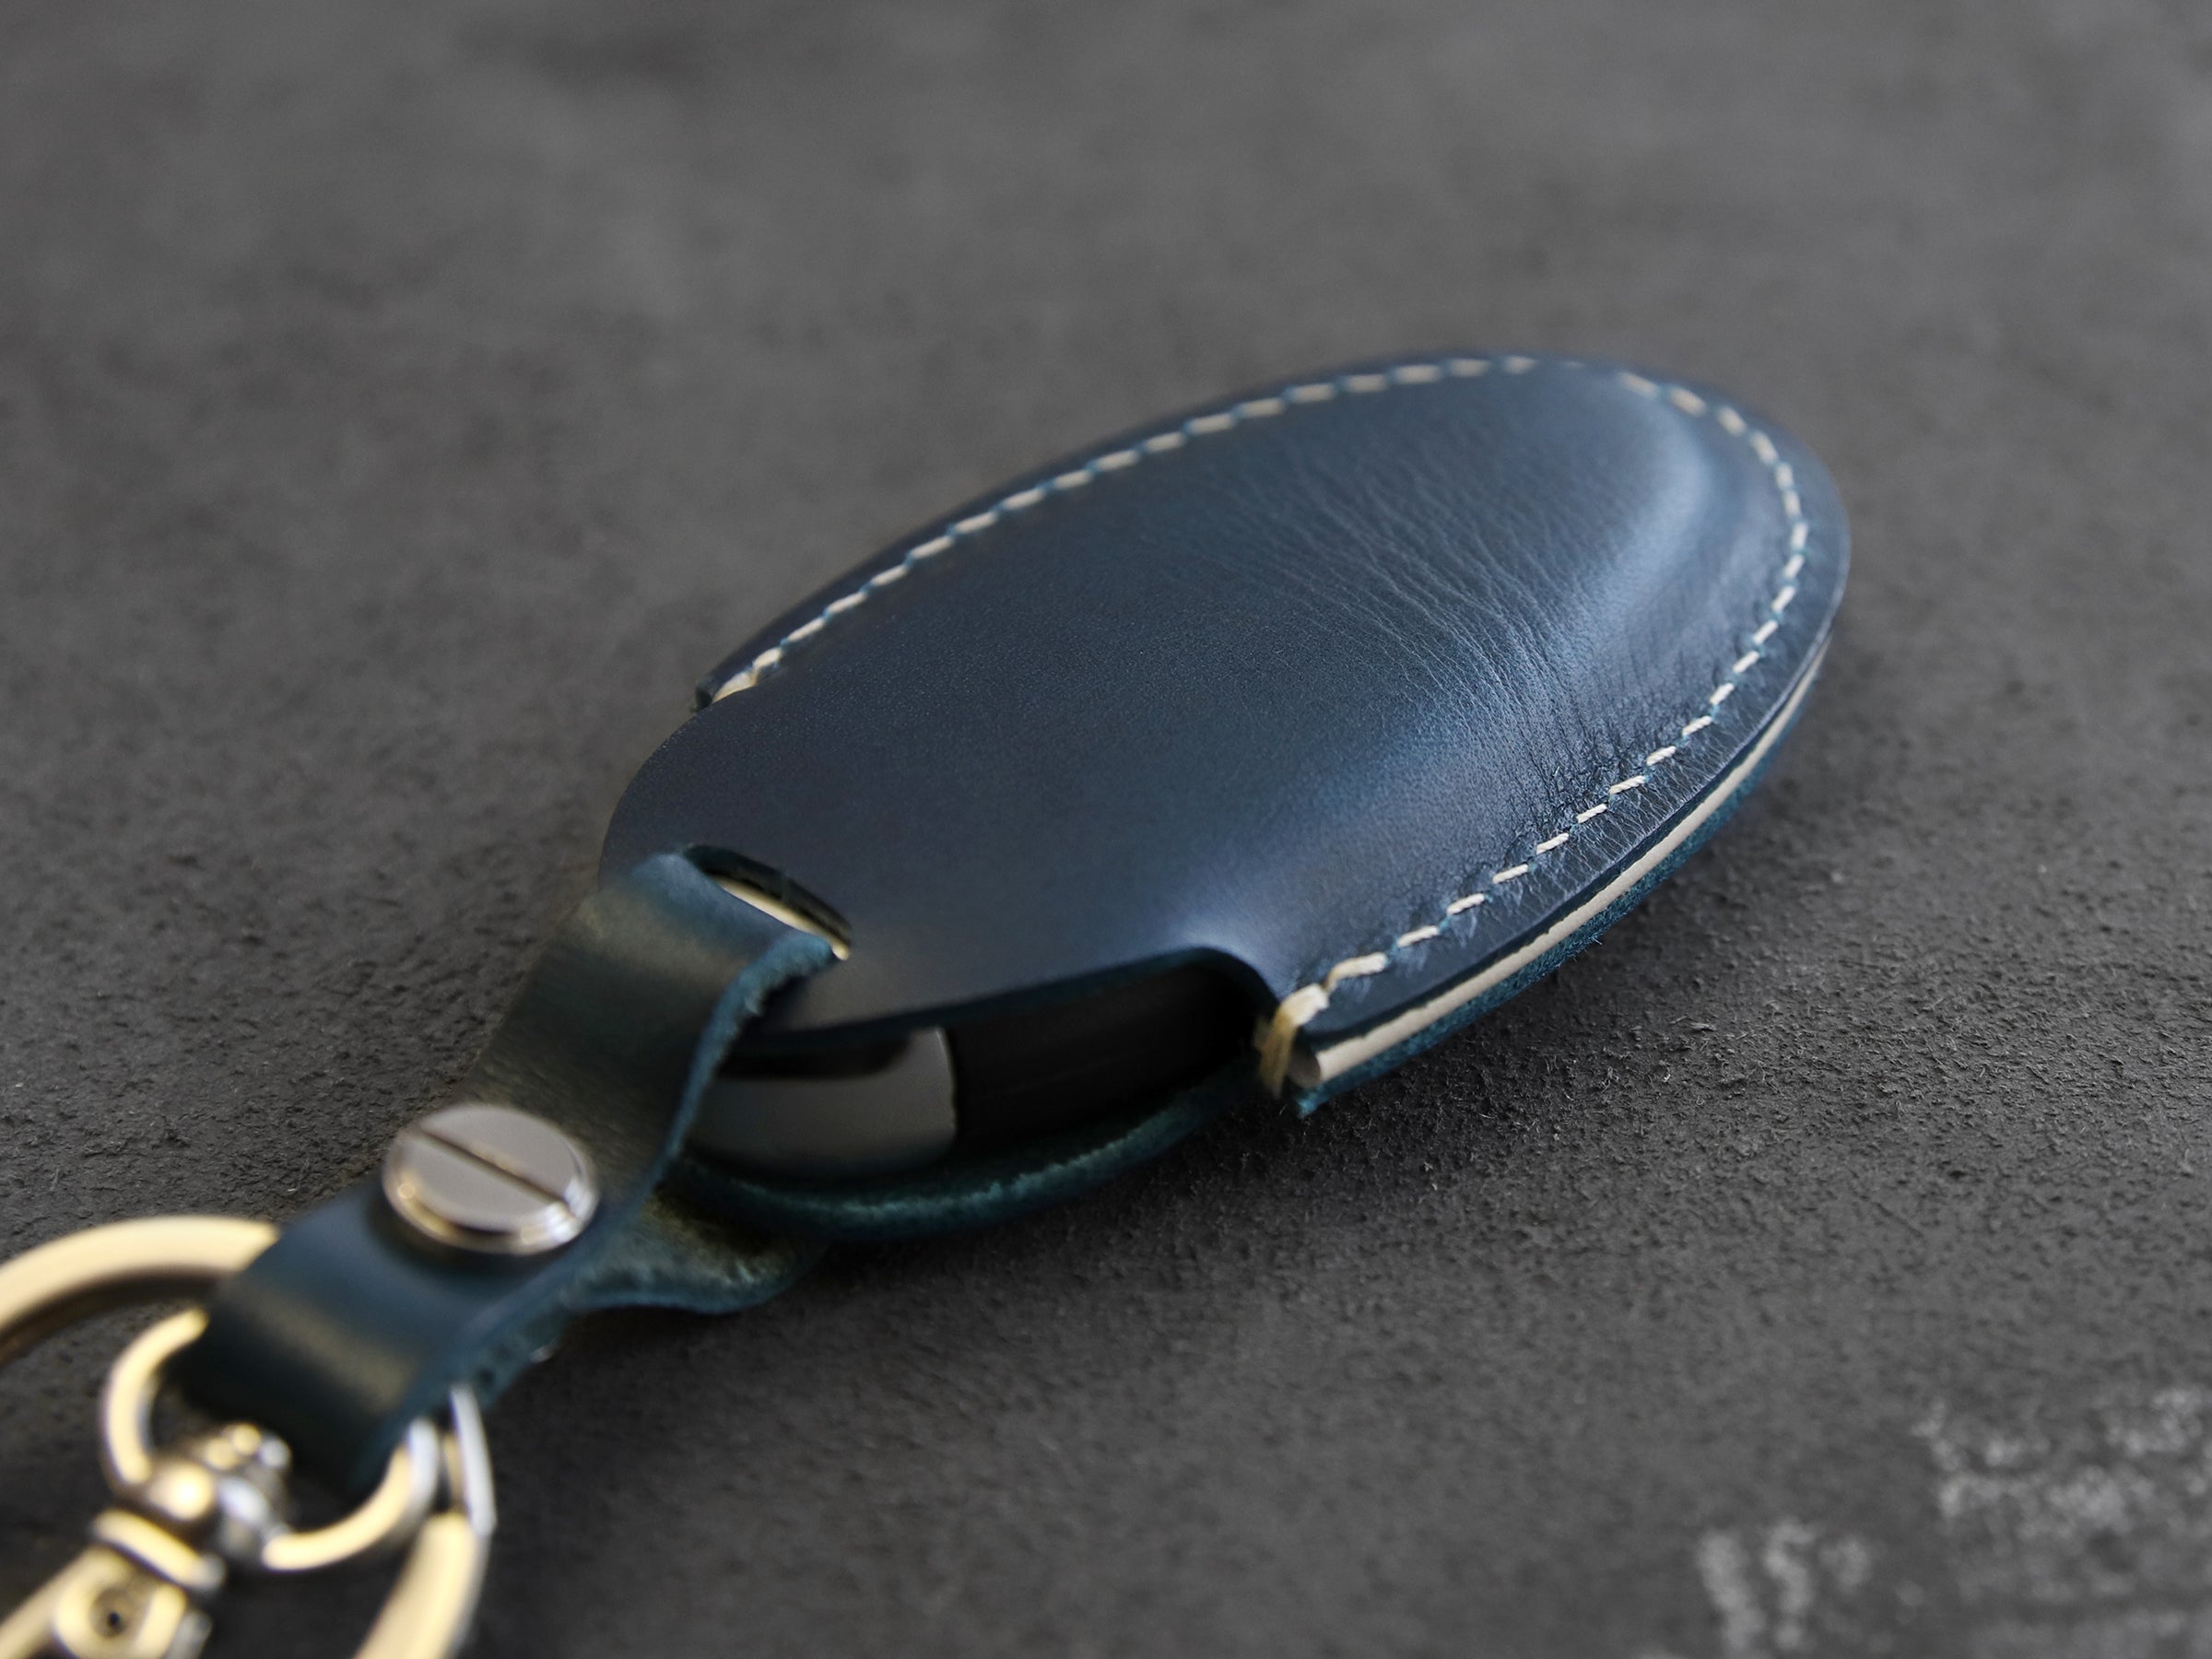 Infiniti [1-4] Key Cover Leather Case - G35 QX56 FX35 Q50 G37 M35 QX60 i35 QX80 Q60 QX30 - 4 Buttons